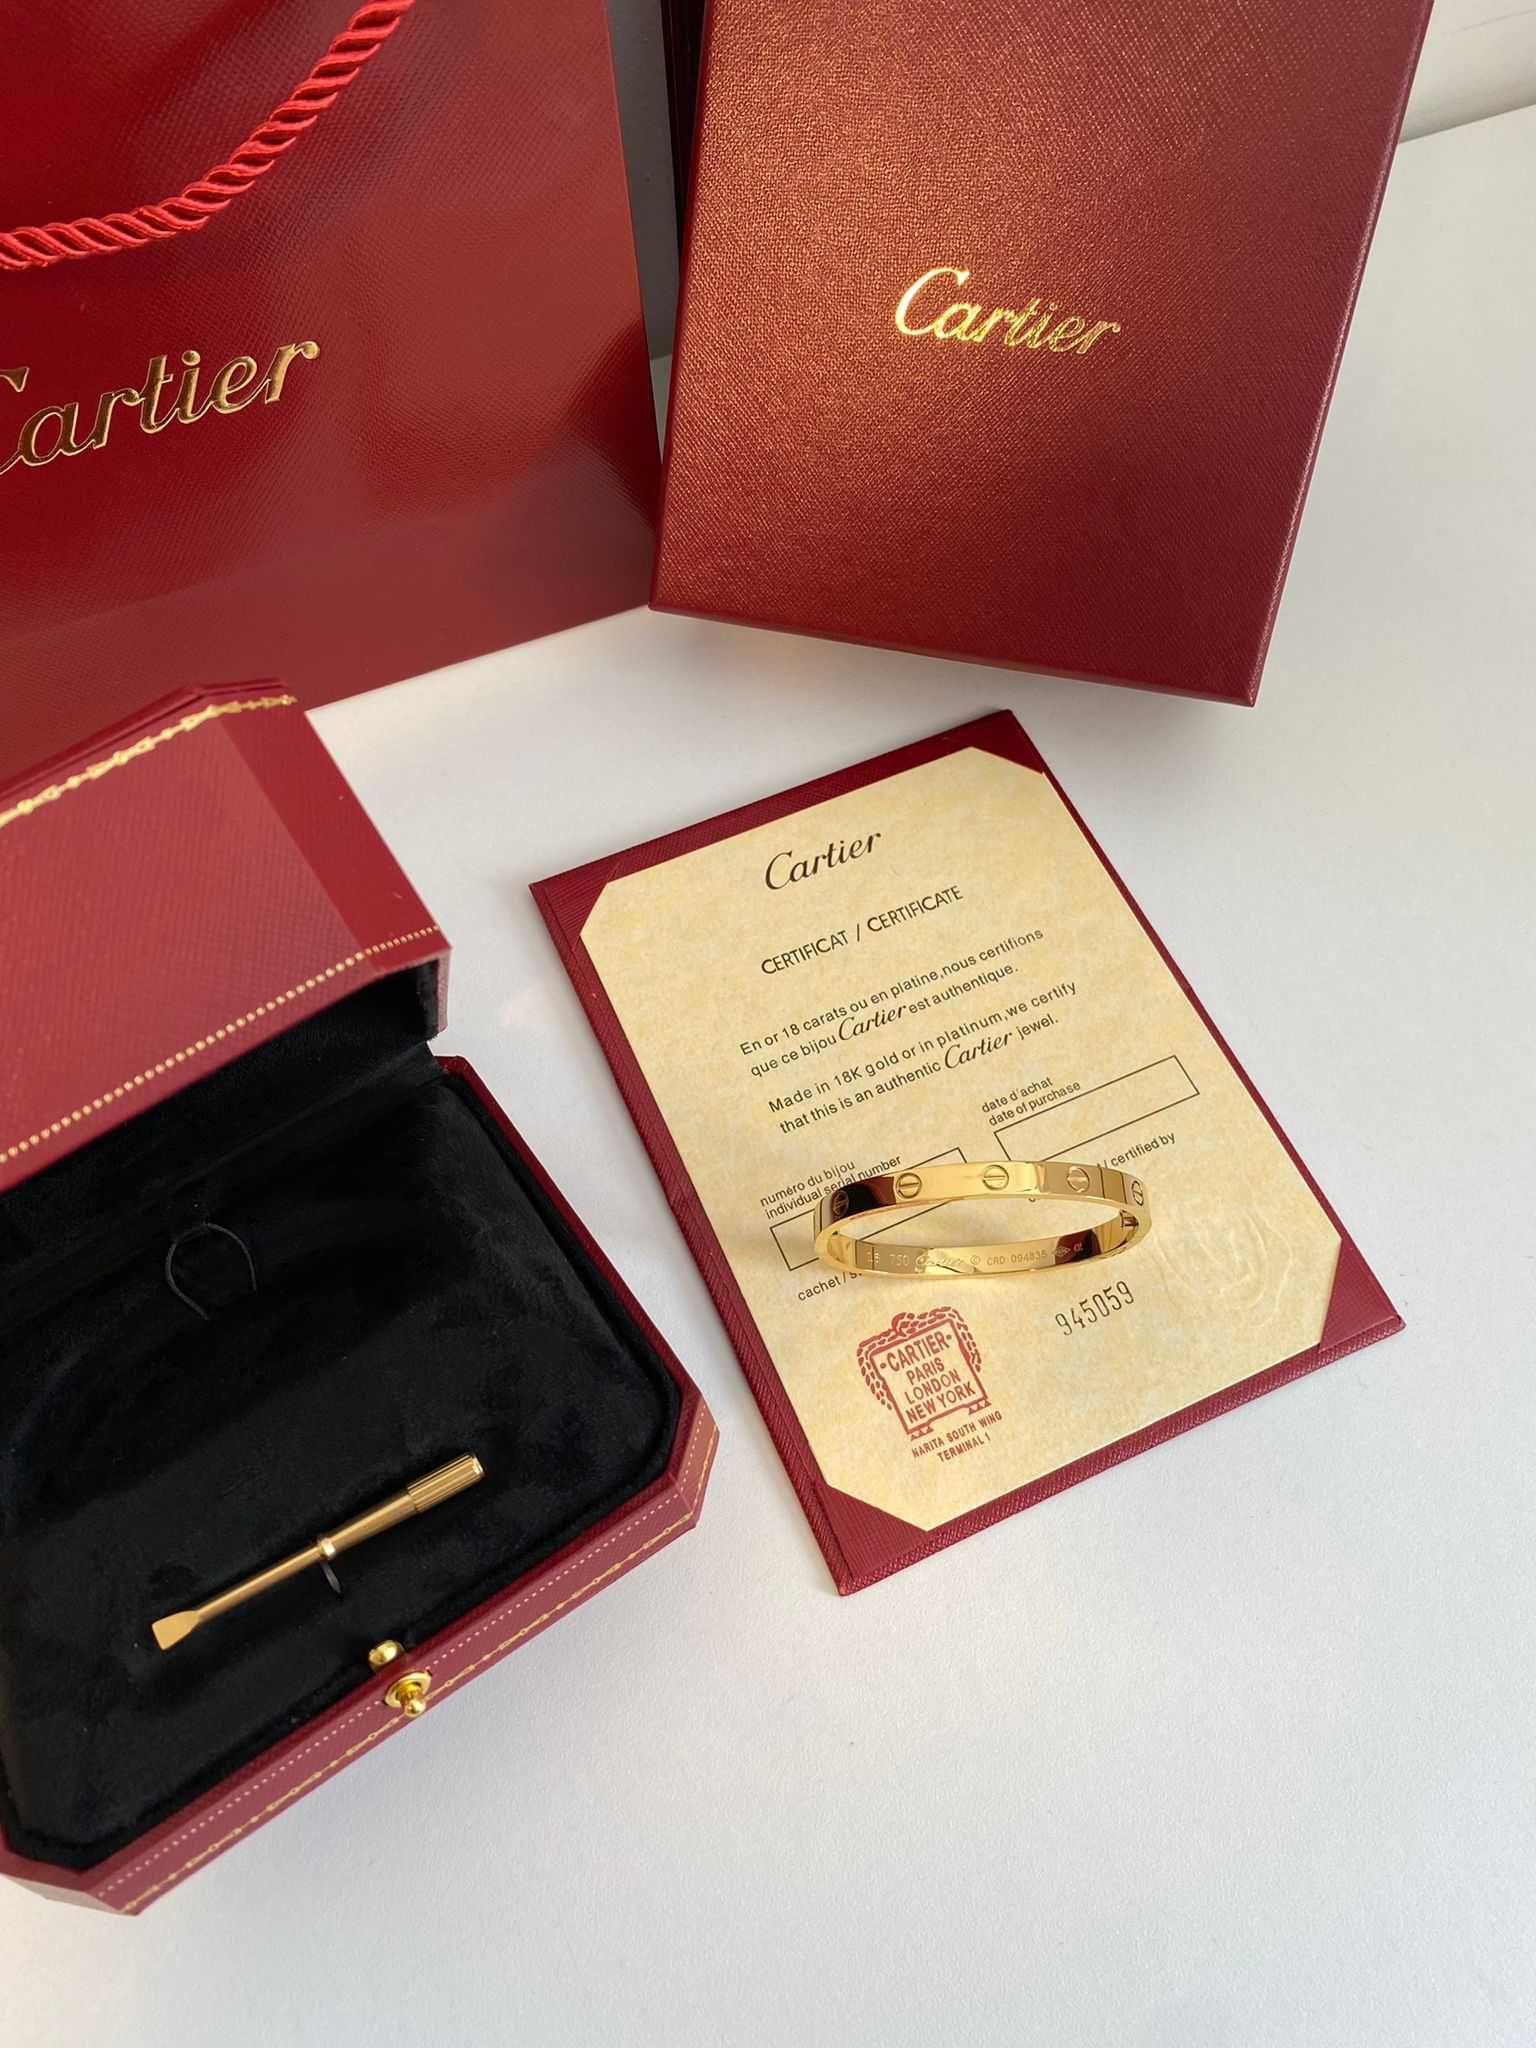 Brățară Cartier LOVE 19 Gold 24K cu cutie